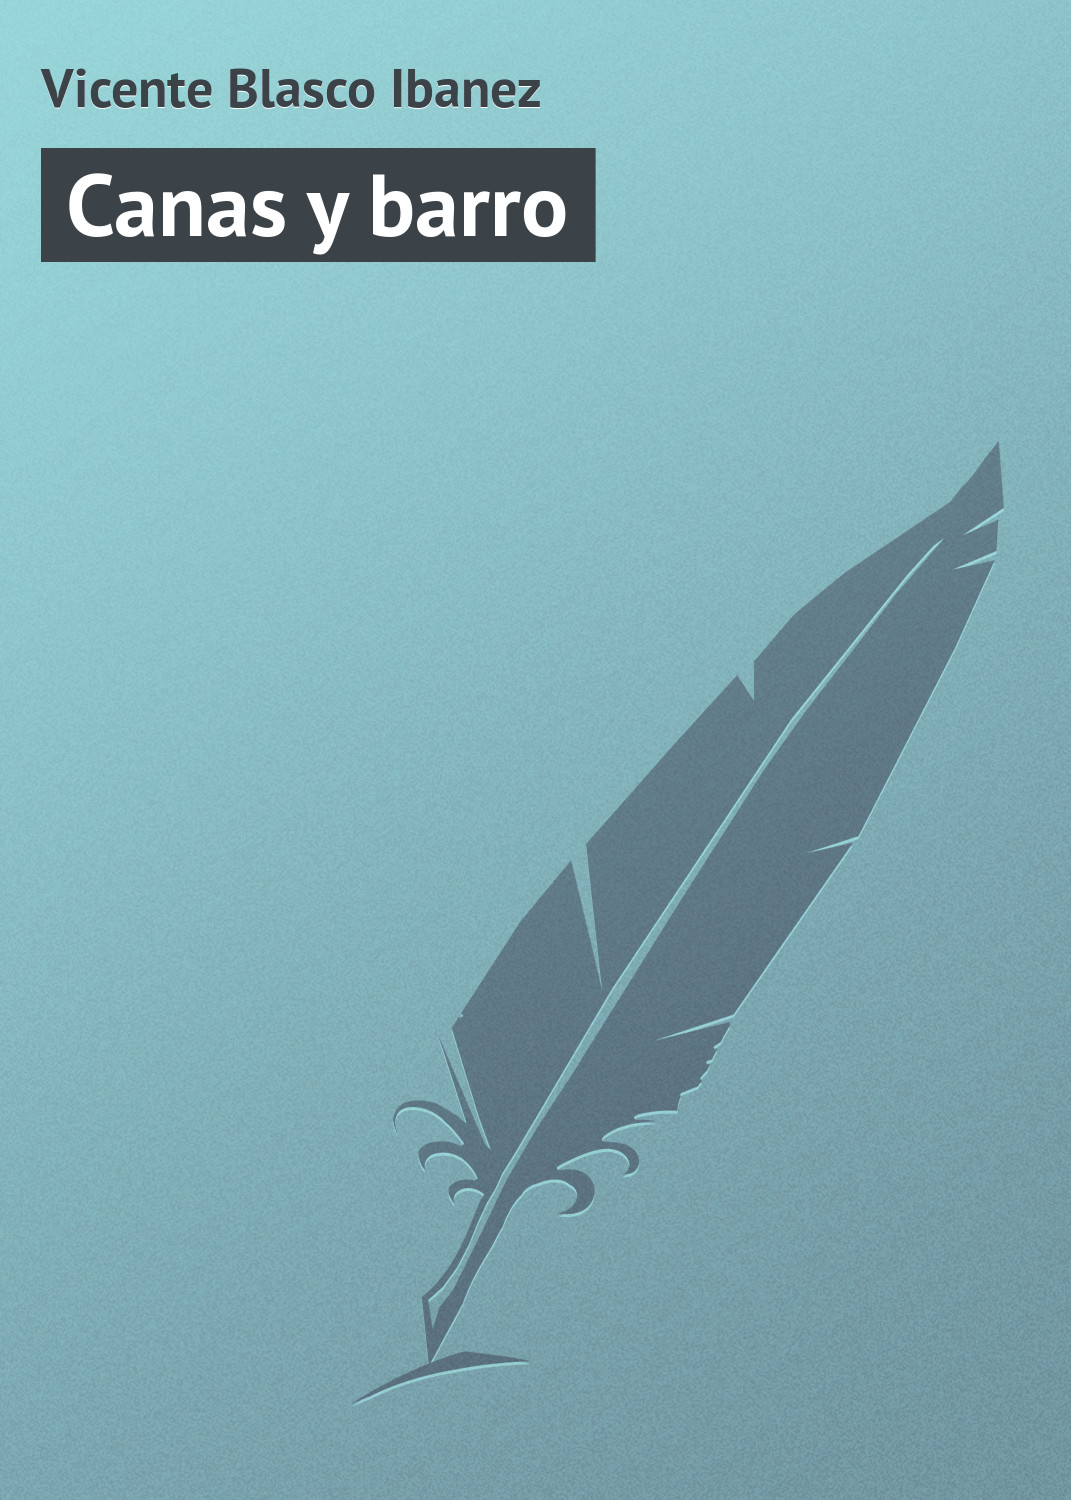 Книга Canas y barro из серии , созданная Vicente Blasco, может относится к жанру Зарубежная старинная литература, Зарубежная классика. Стоимость электронной книги Canas y barro с идентификатором 21107662 составляет 5.99 руб.